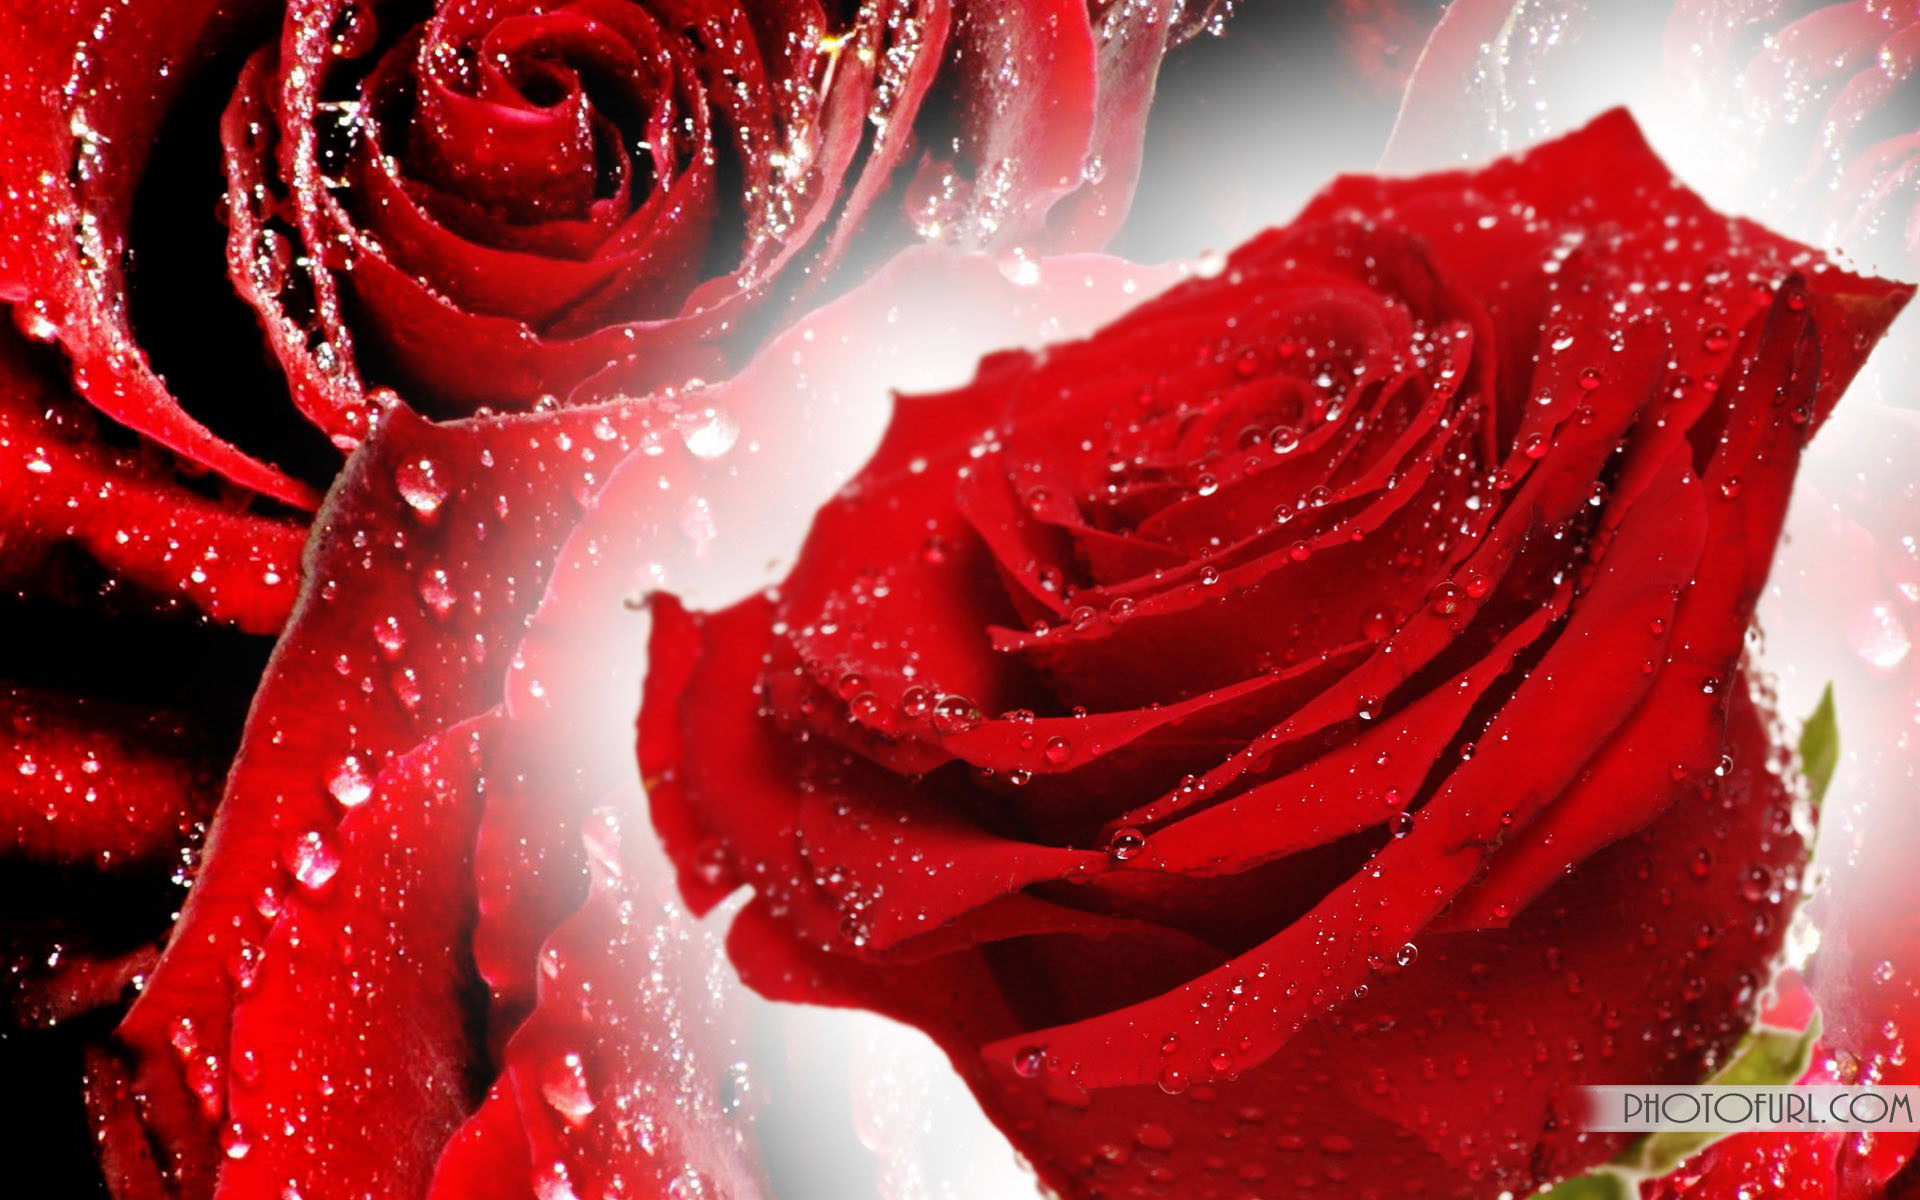 bellissimo download di sfondi,rose da giardino,rosso,rosa,fiore,acqua